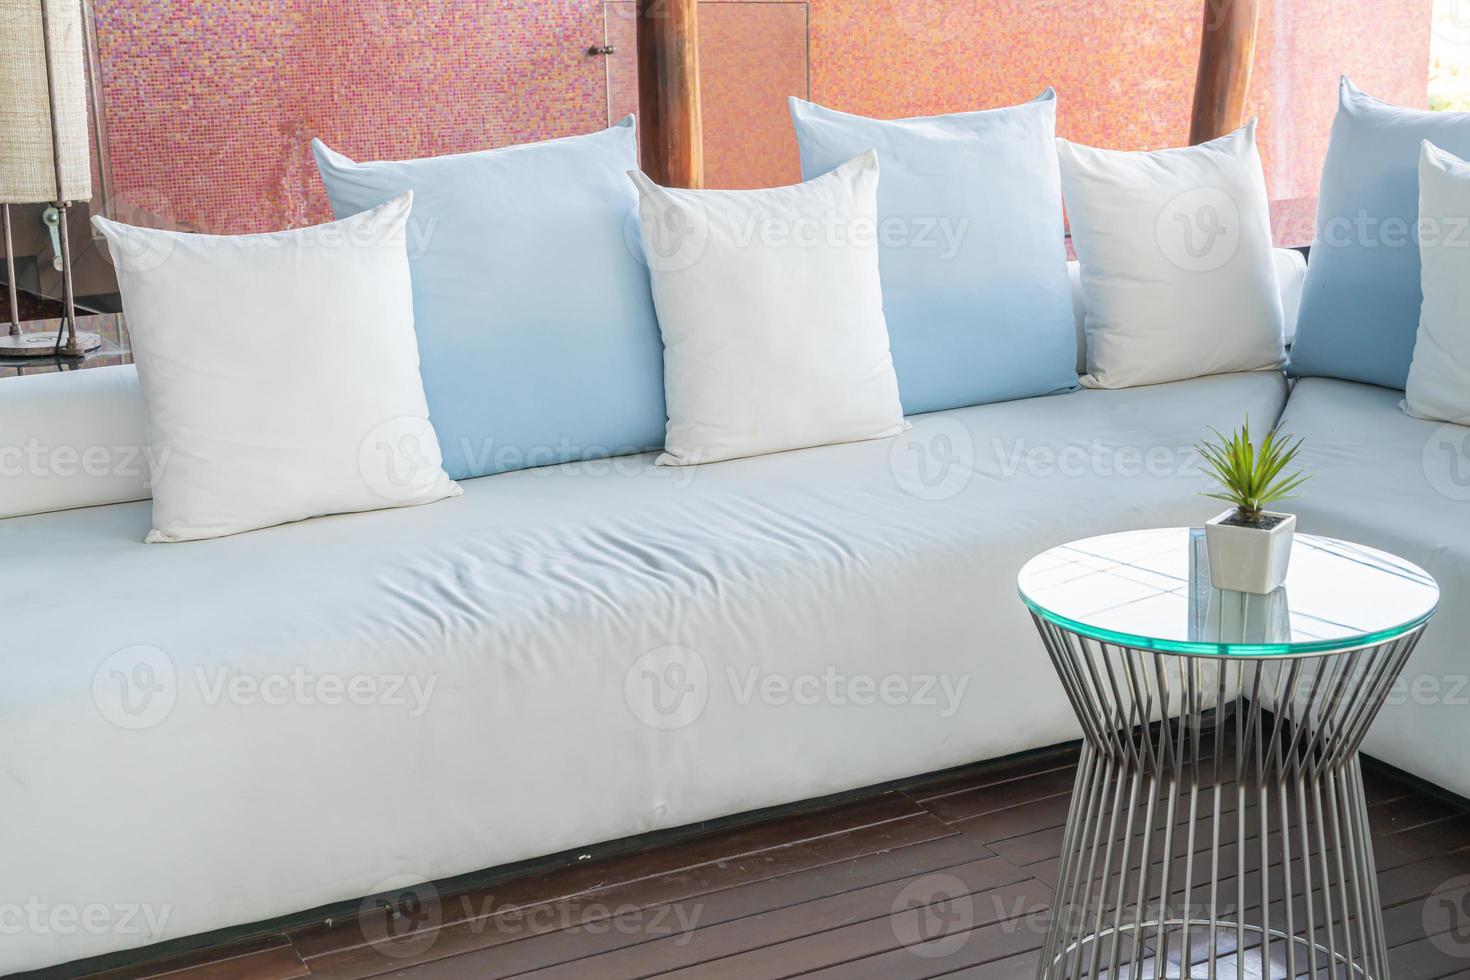 Hermosa y cómoda decoración de almohadas en el sofá. foto